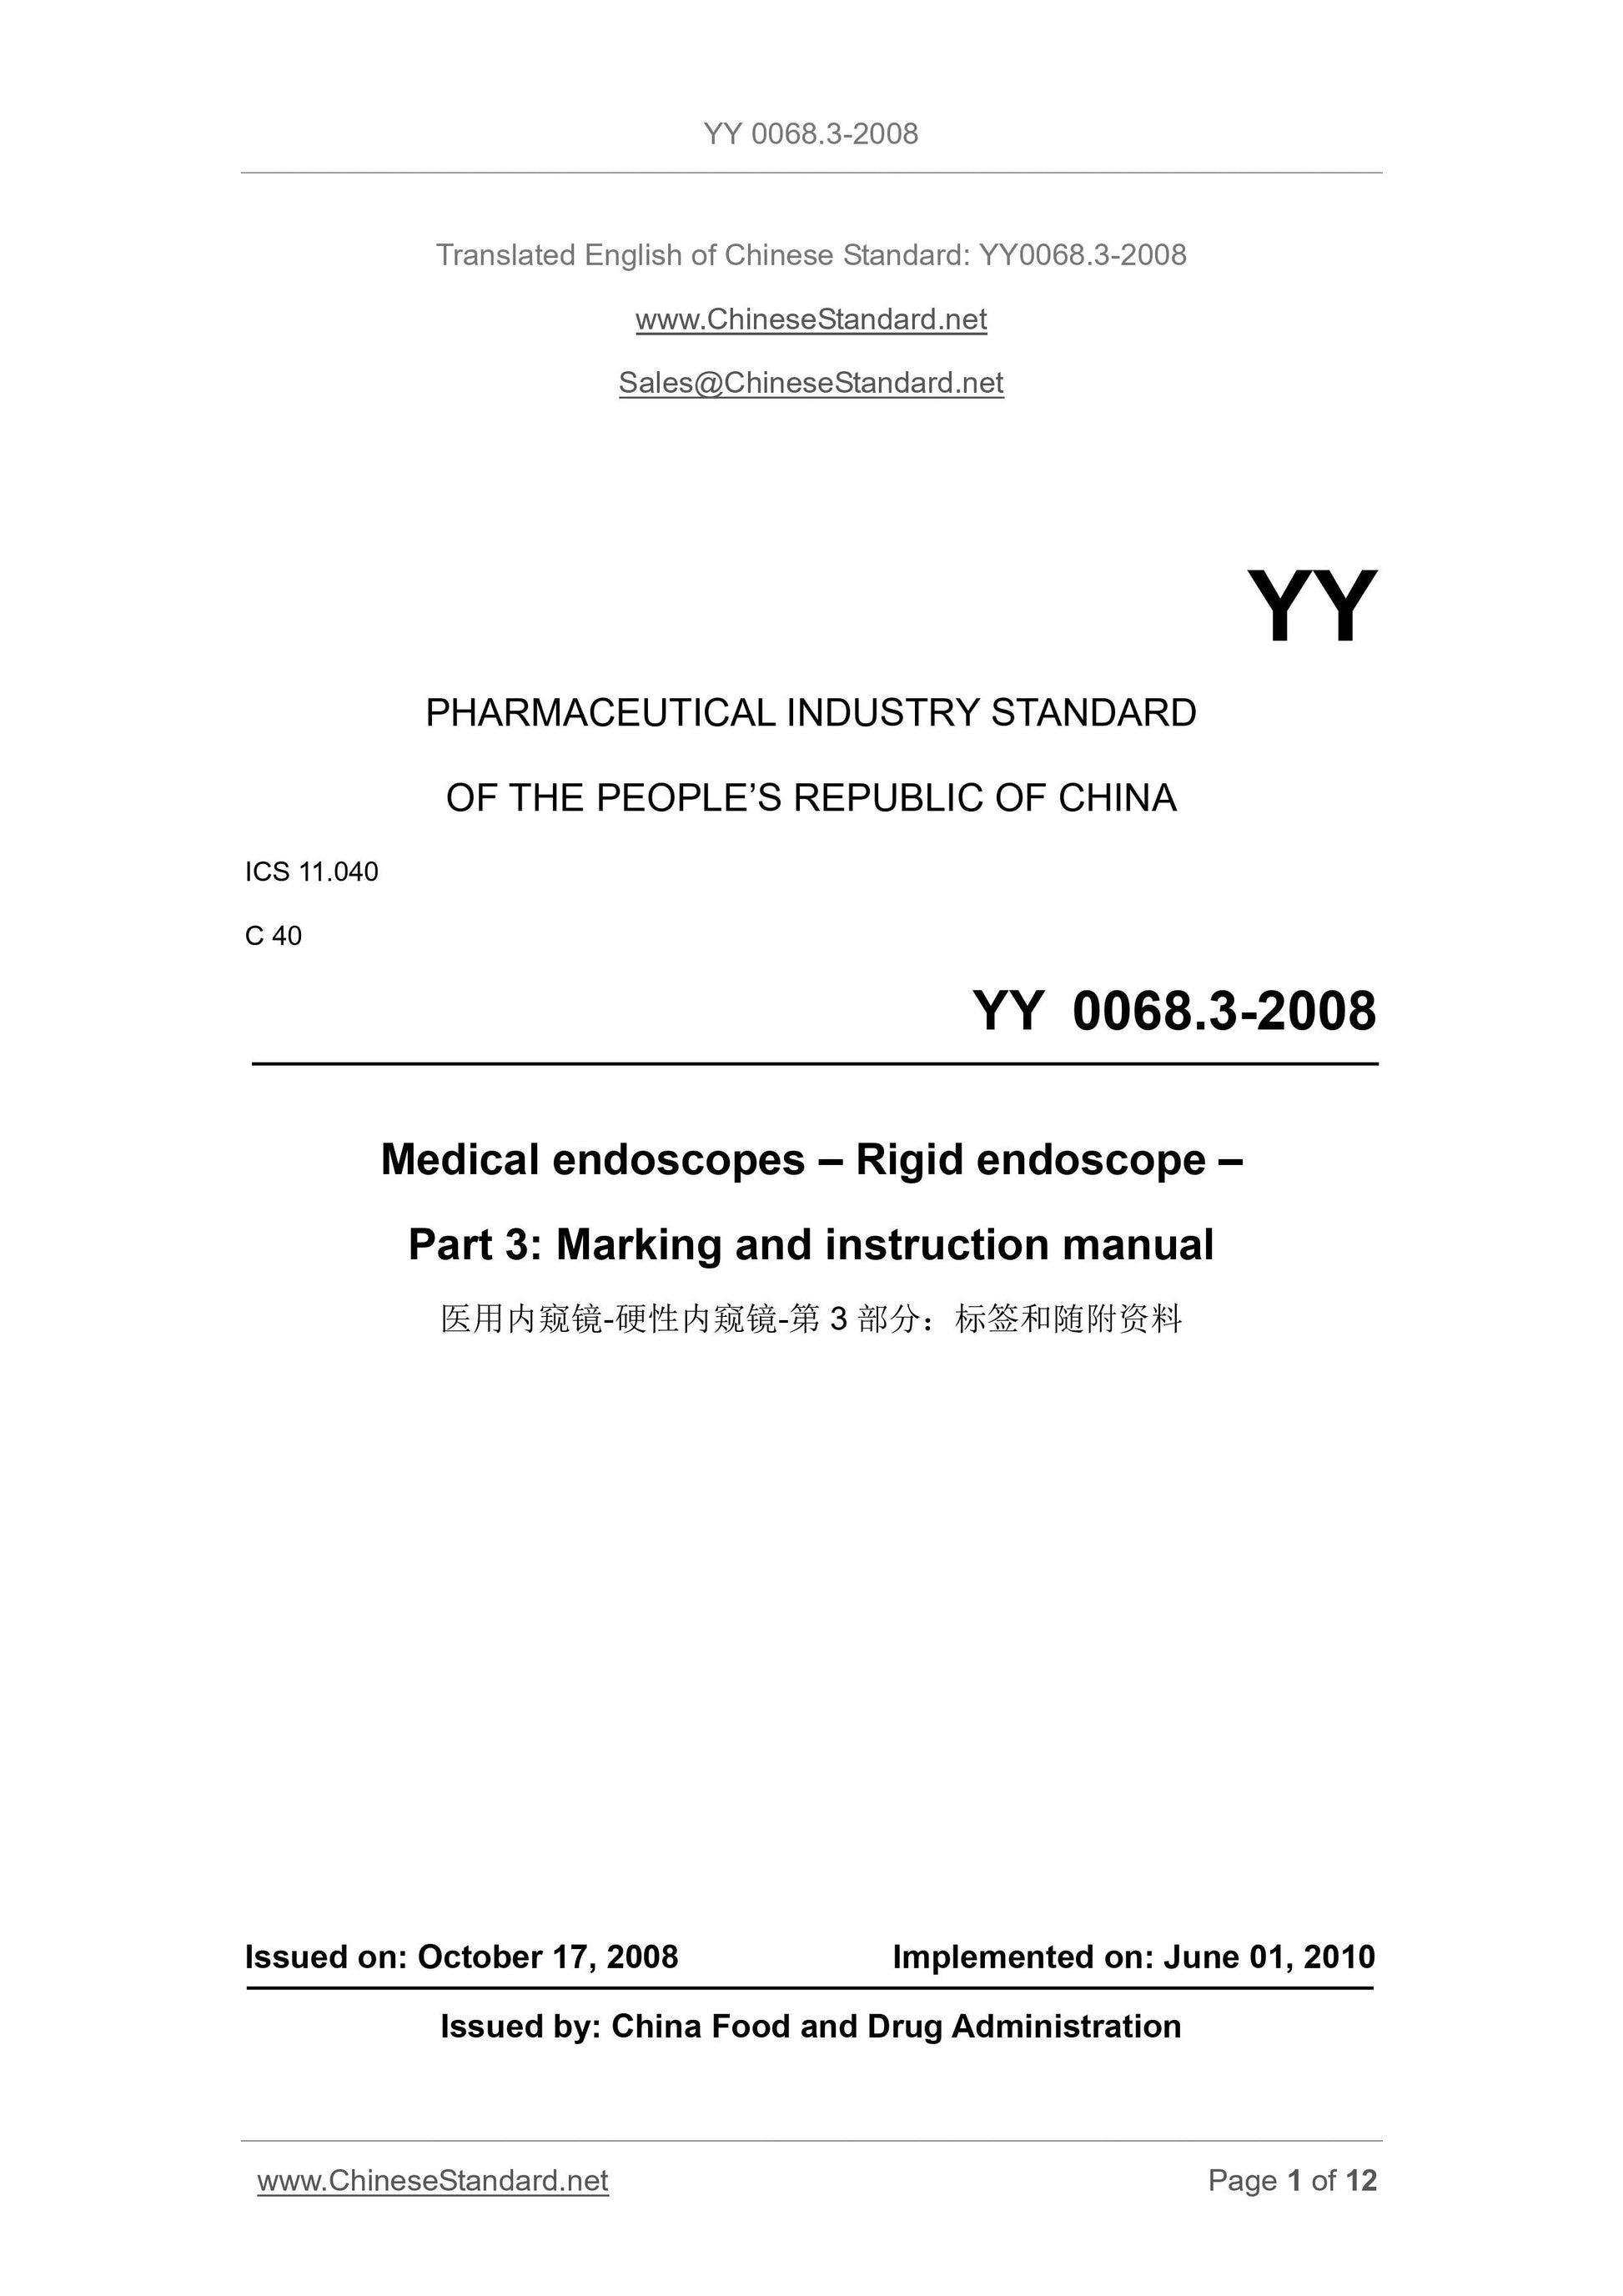 YY 0068.3-2008 Page 1